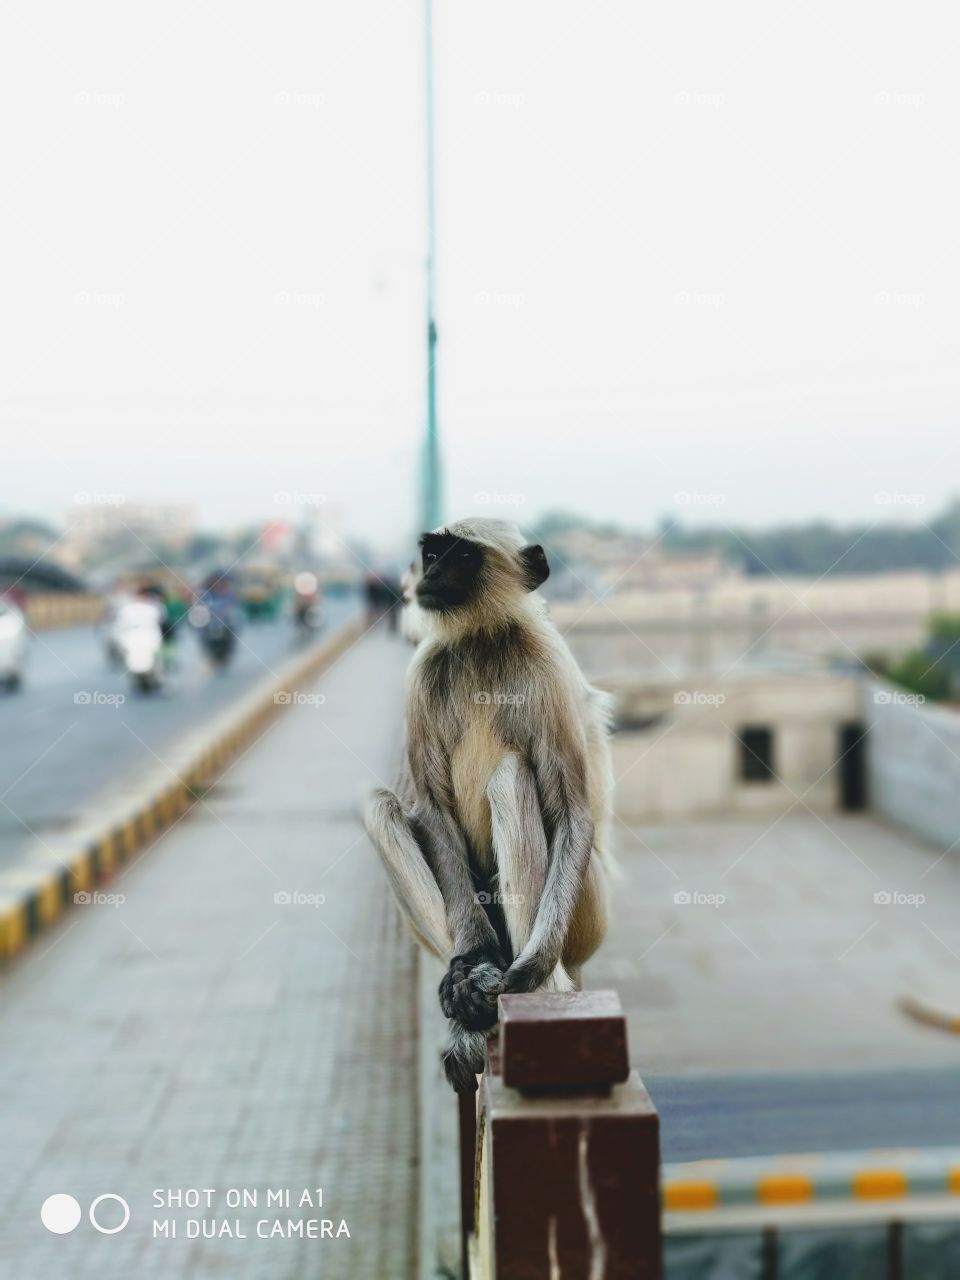 monkey in city